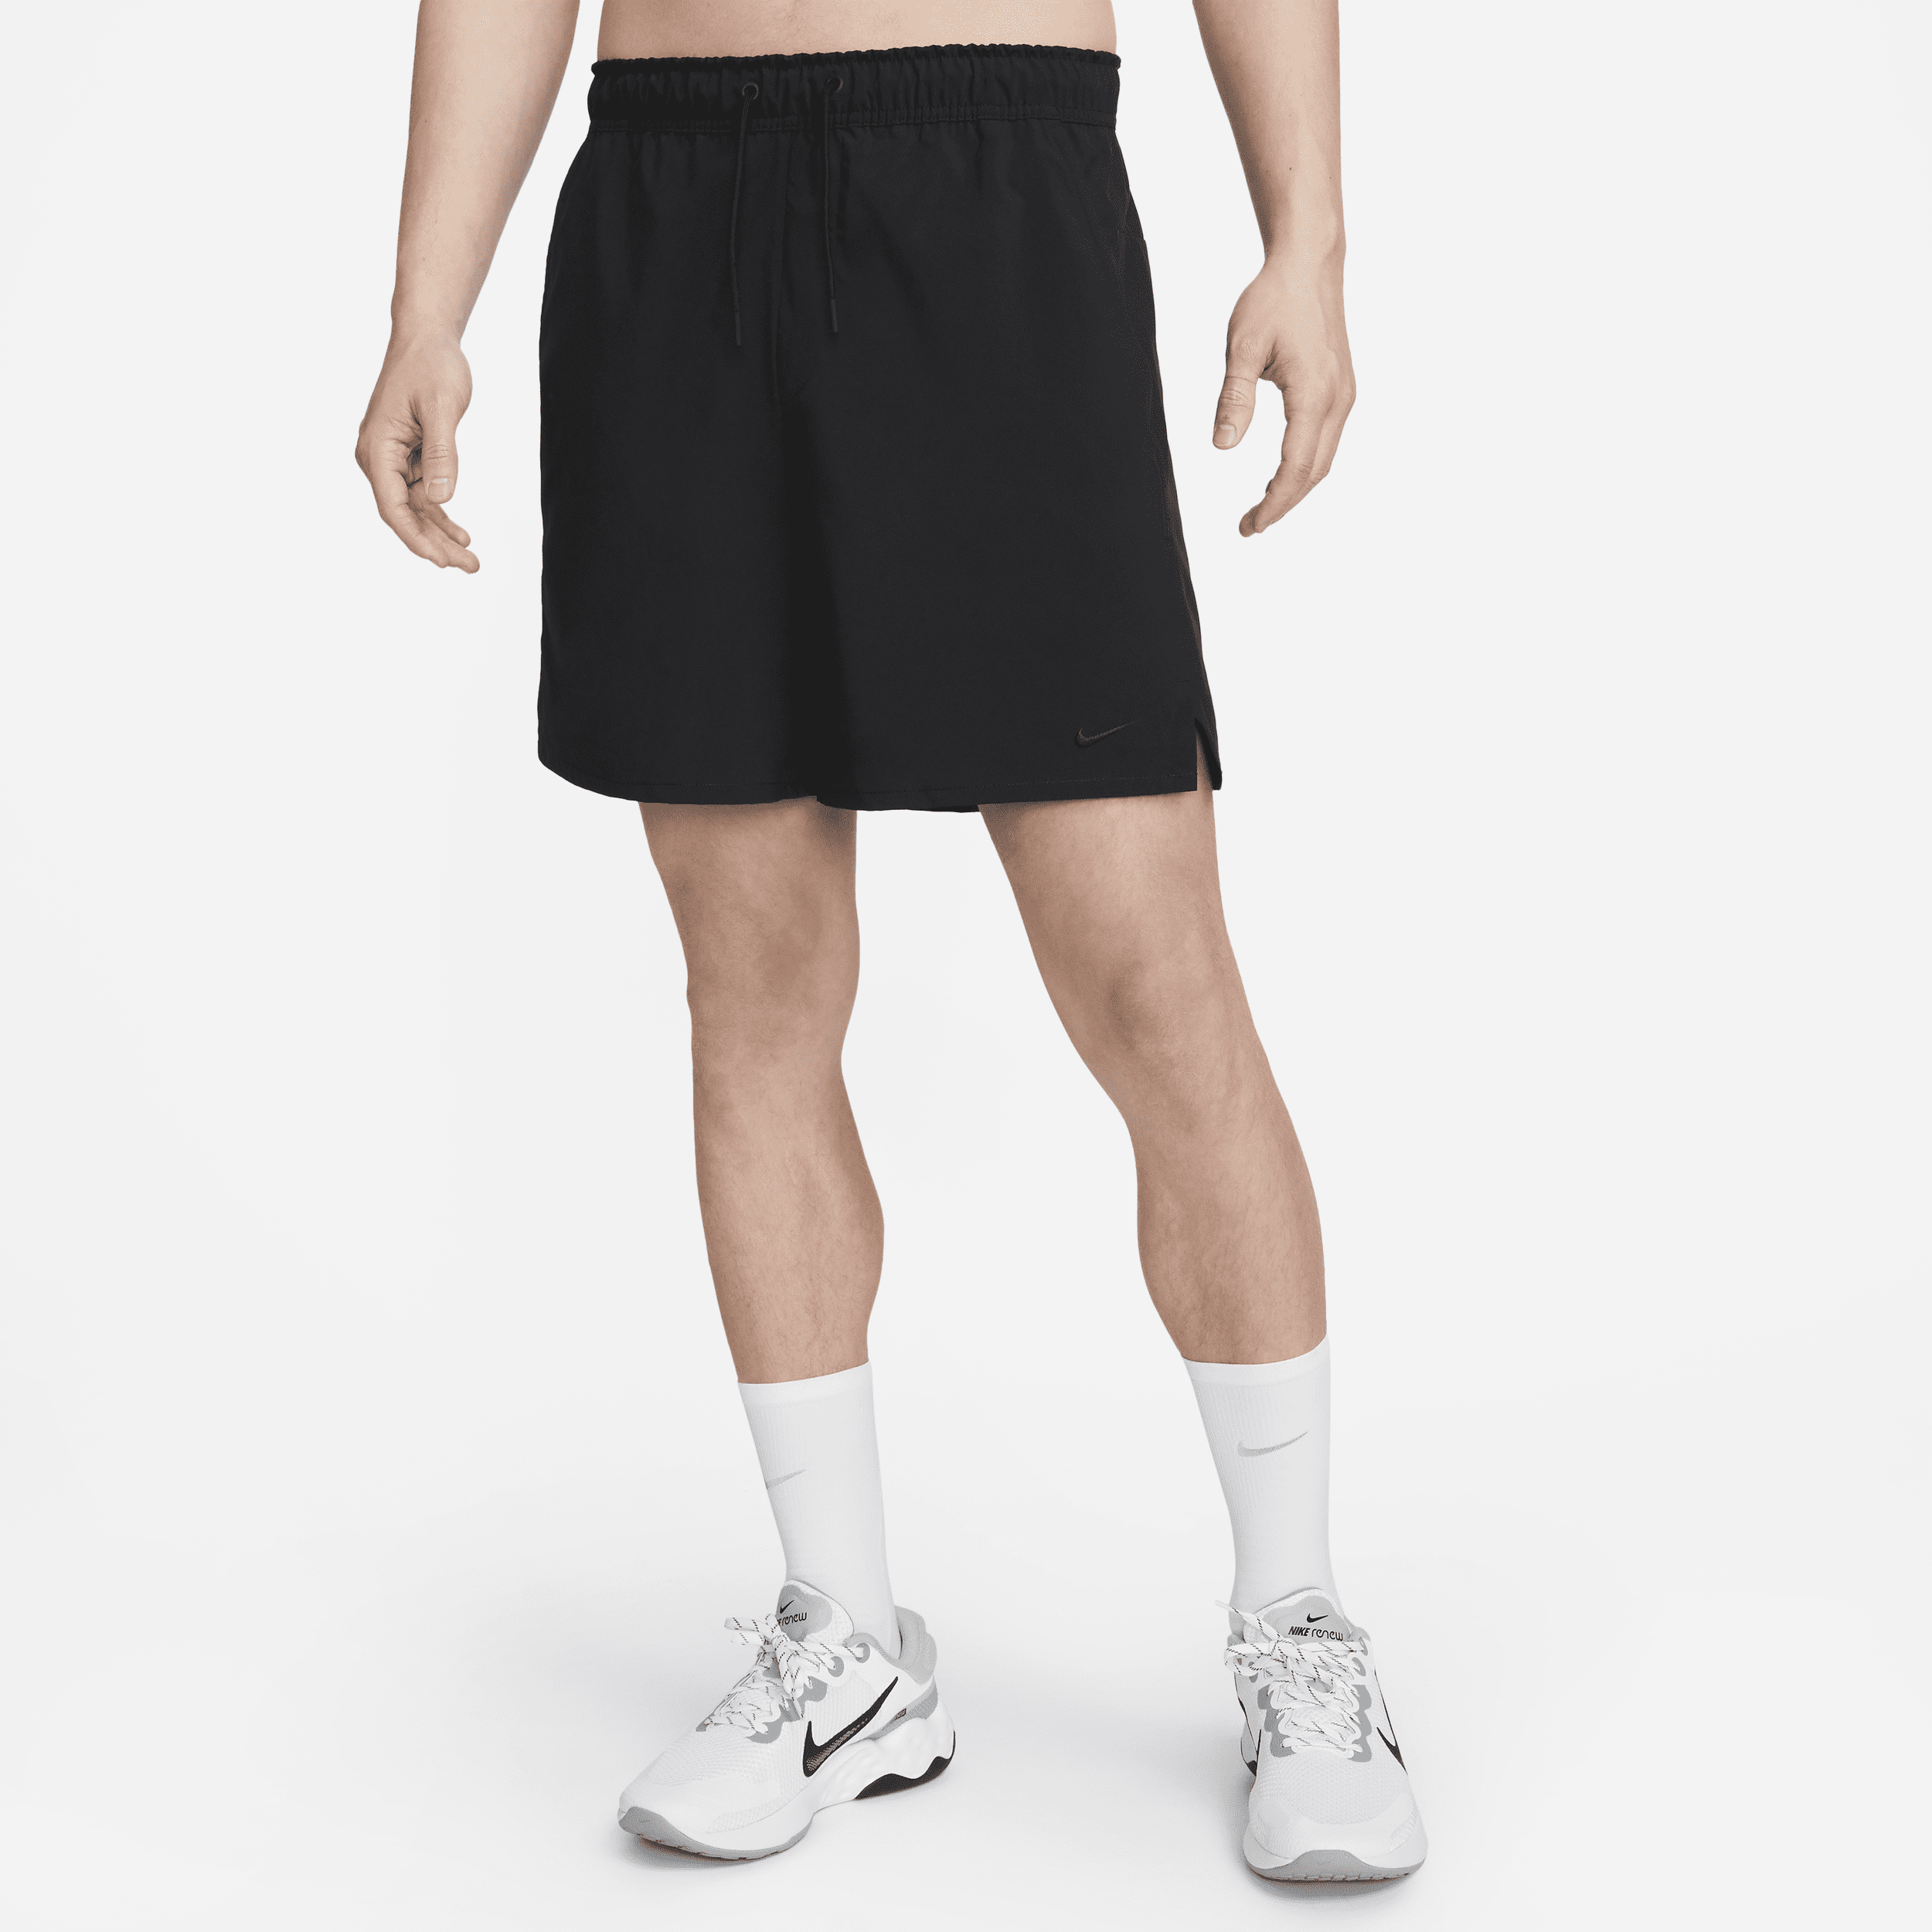 Alsidige Nike Unlimited-Dri-FIT-shorts (18 cm) uden for til mænd - sort